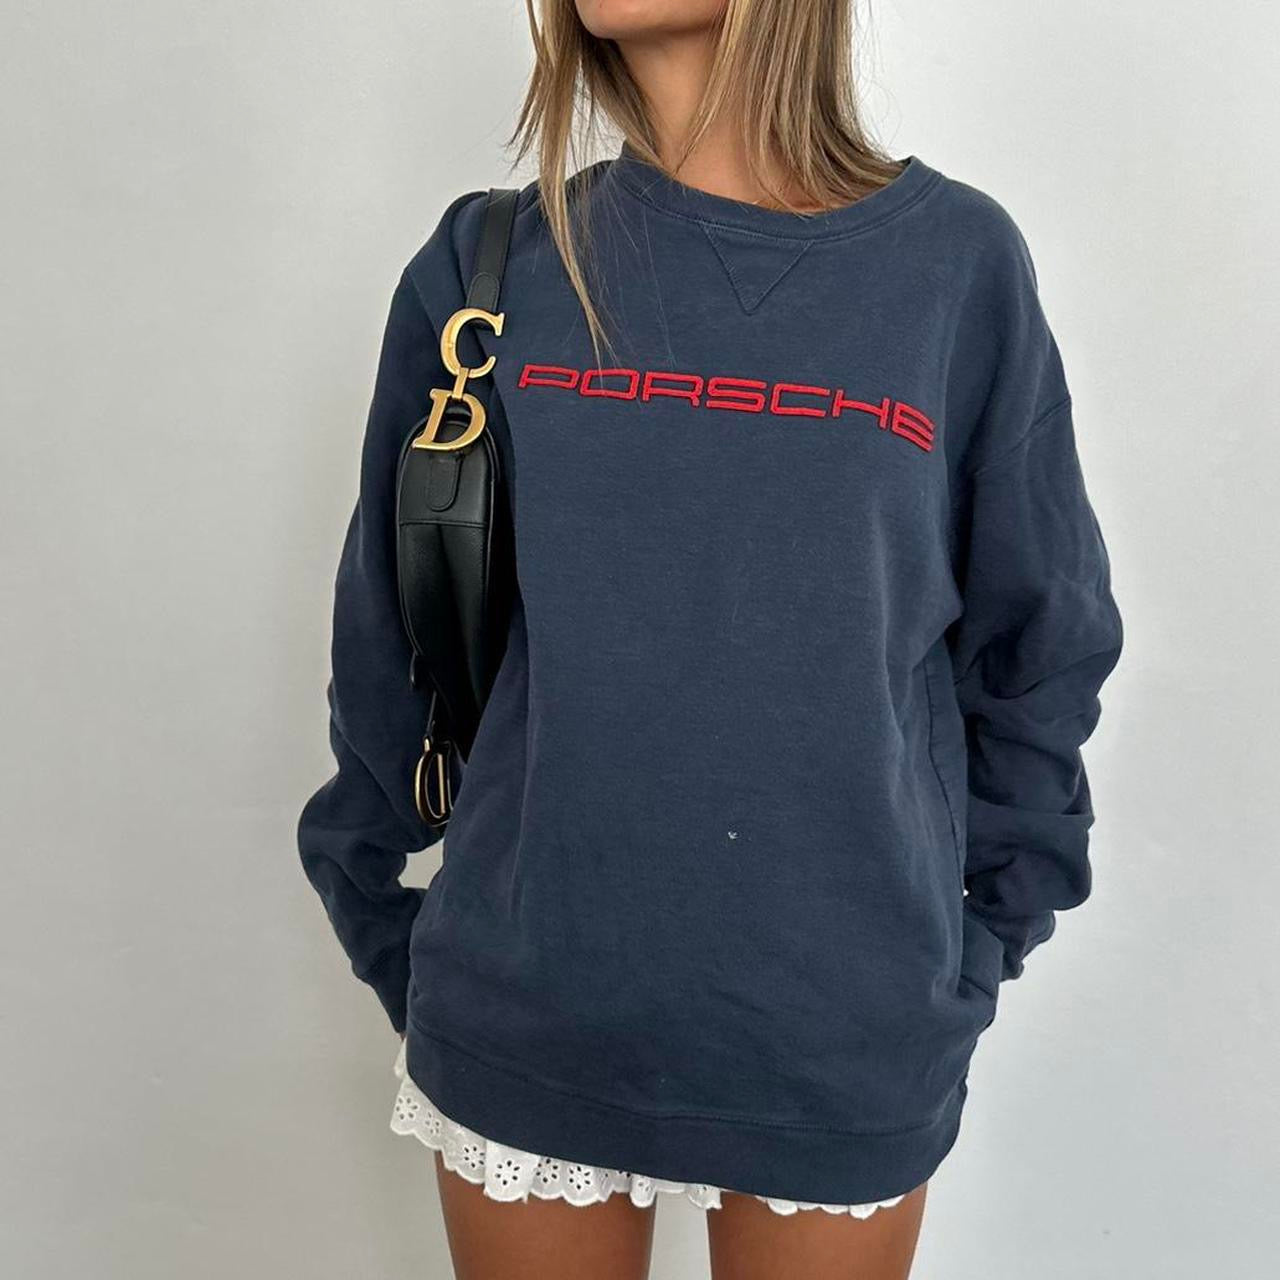 Vintage 90s Porsche navy sweater